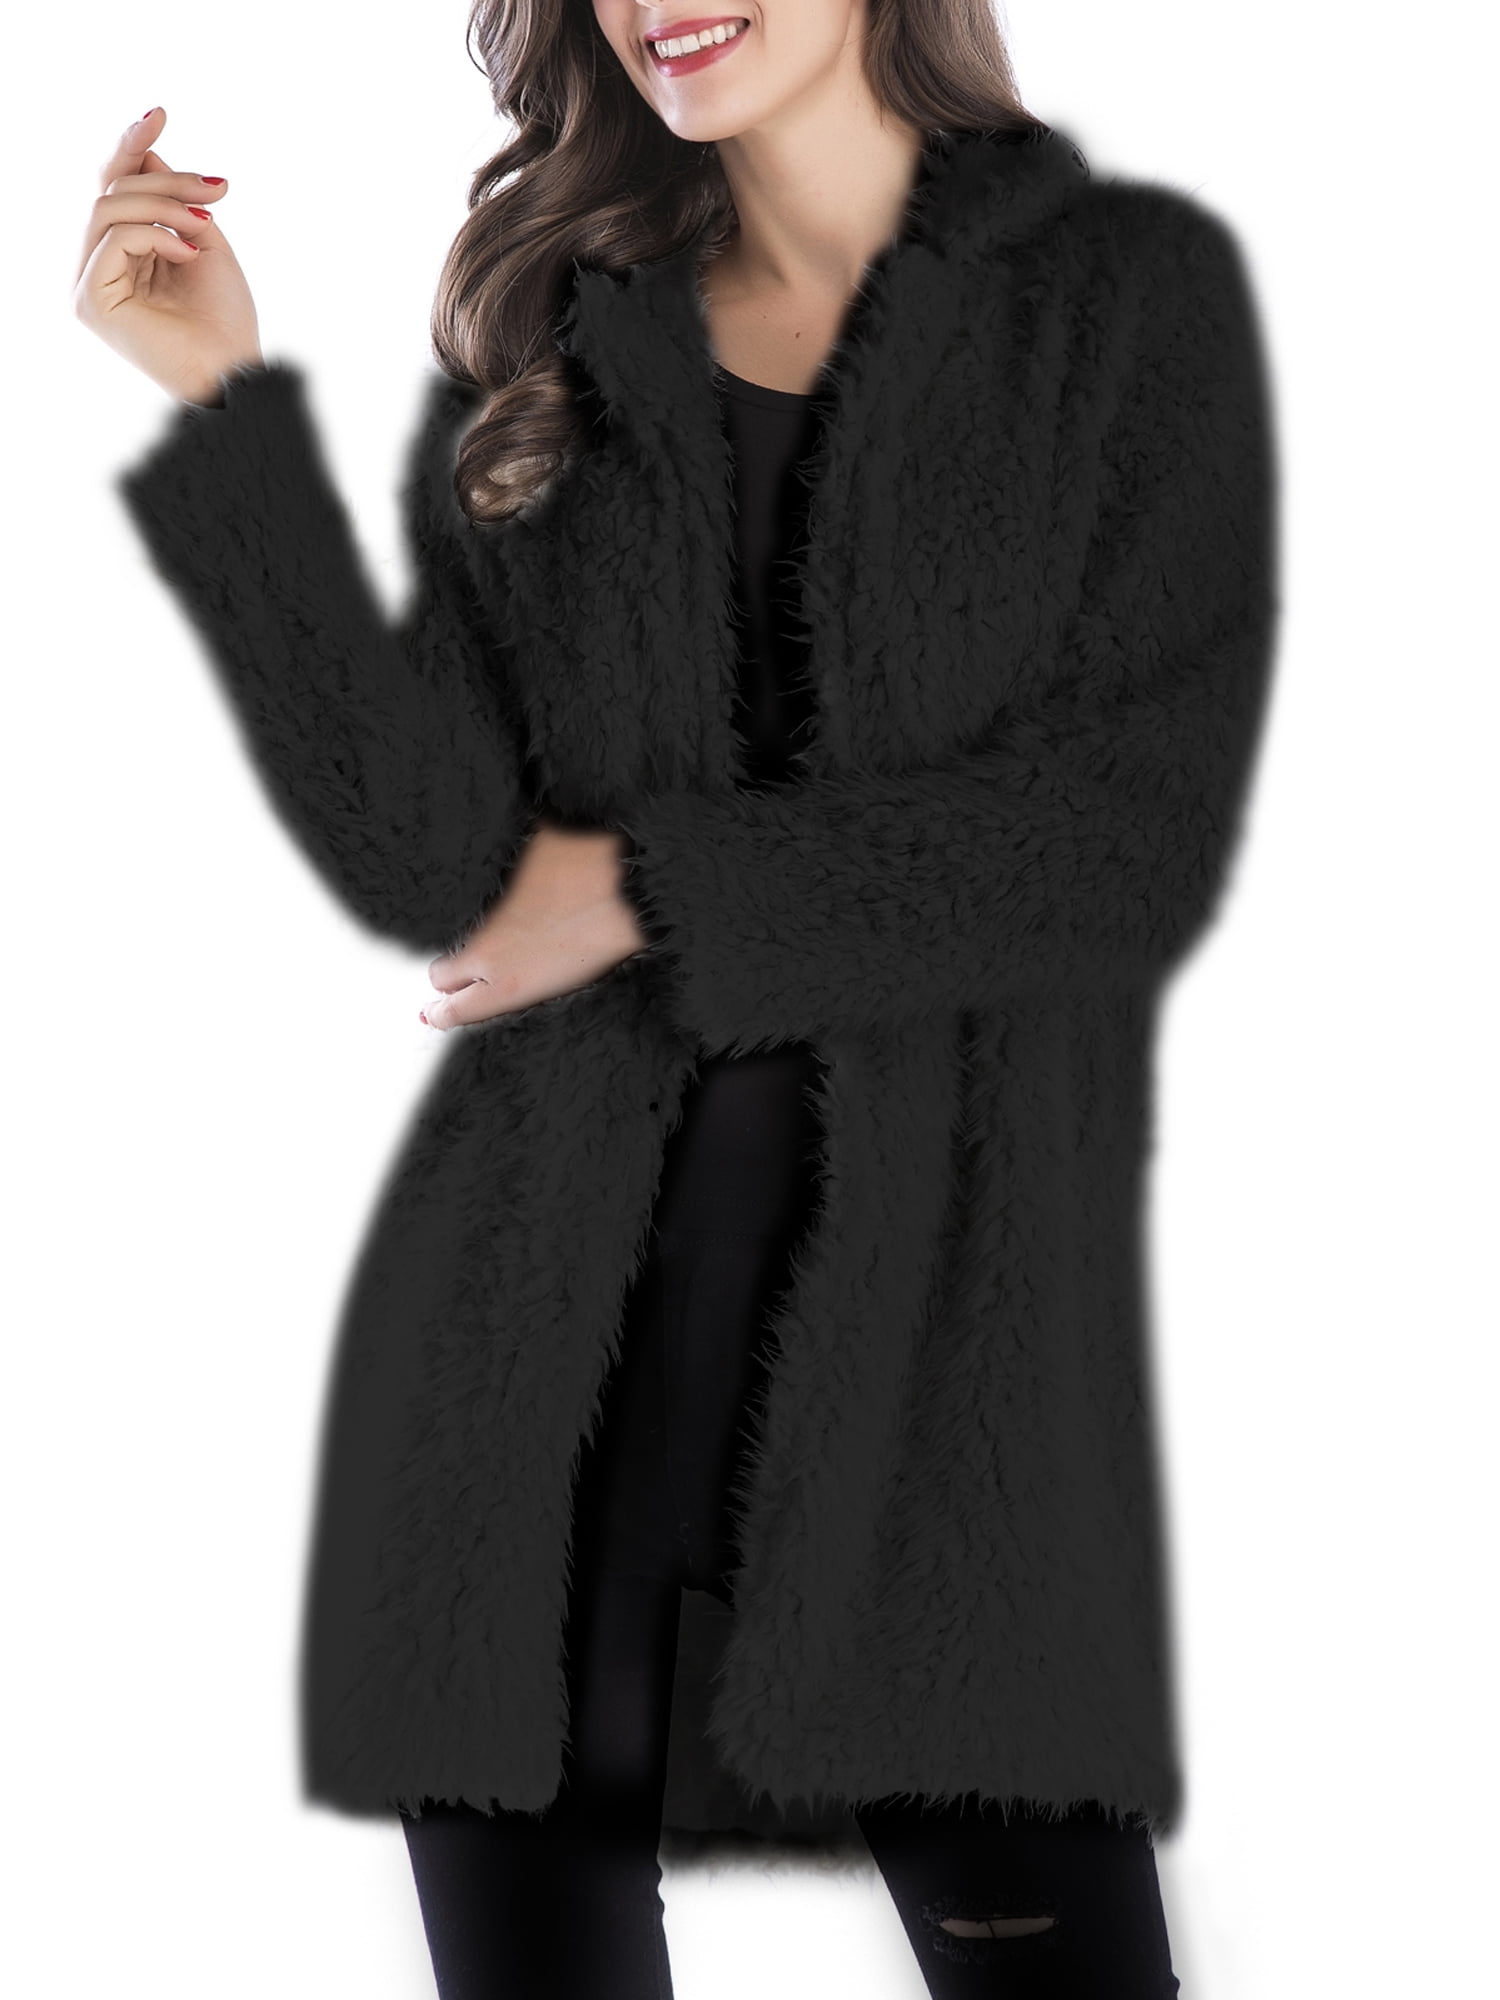 Women Fluffy Fuzzy Faux Fur Coat Open Front Cardigan Jacket Coat Outwear for Wedding Party Winter